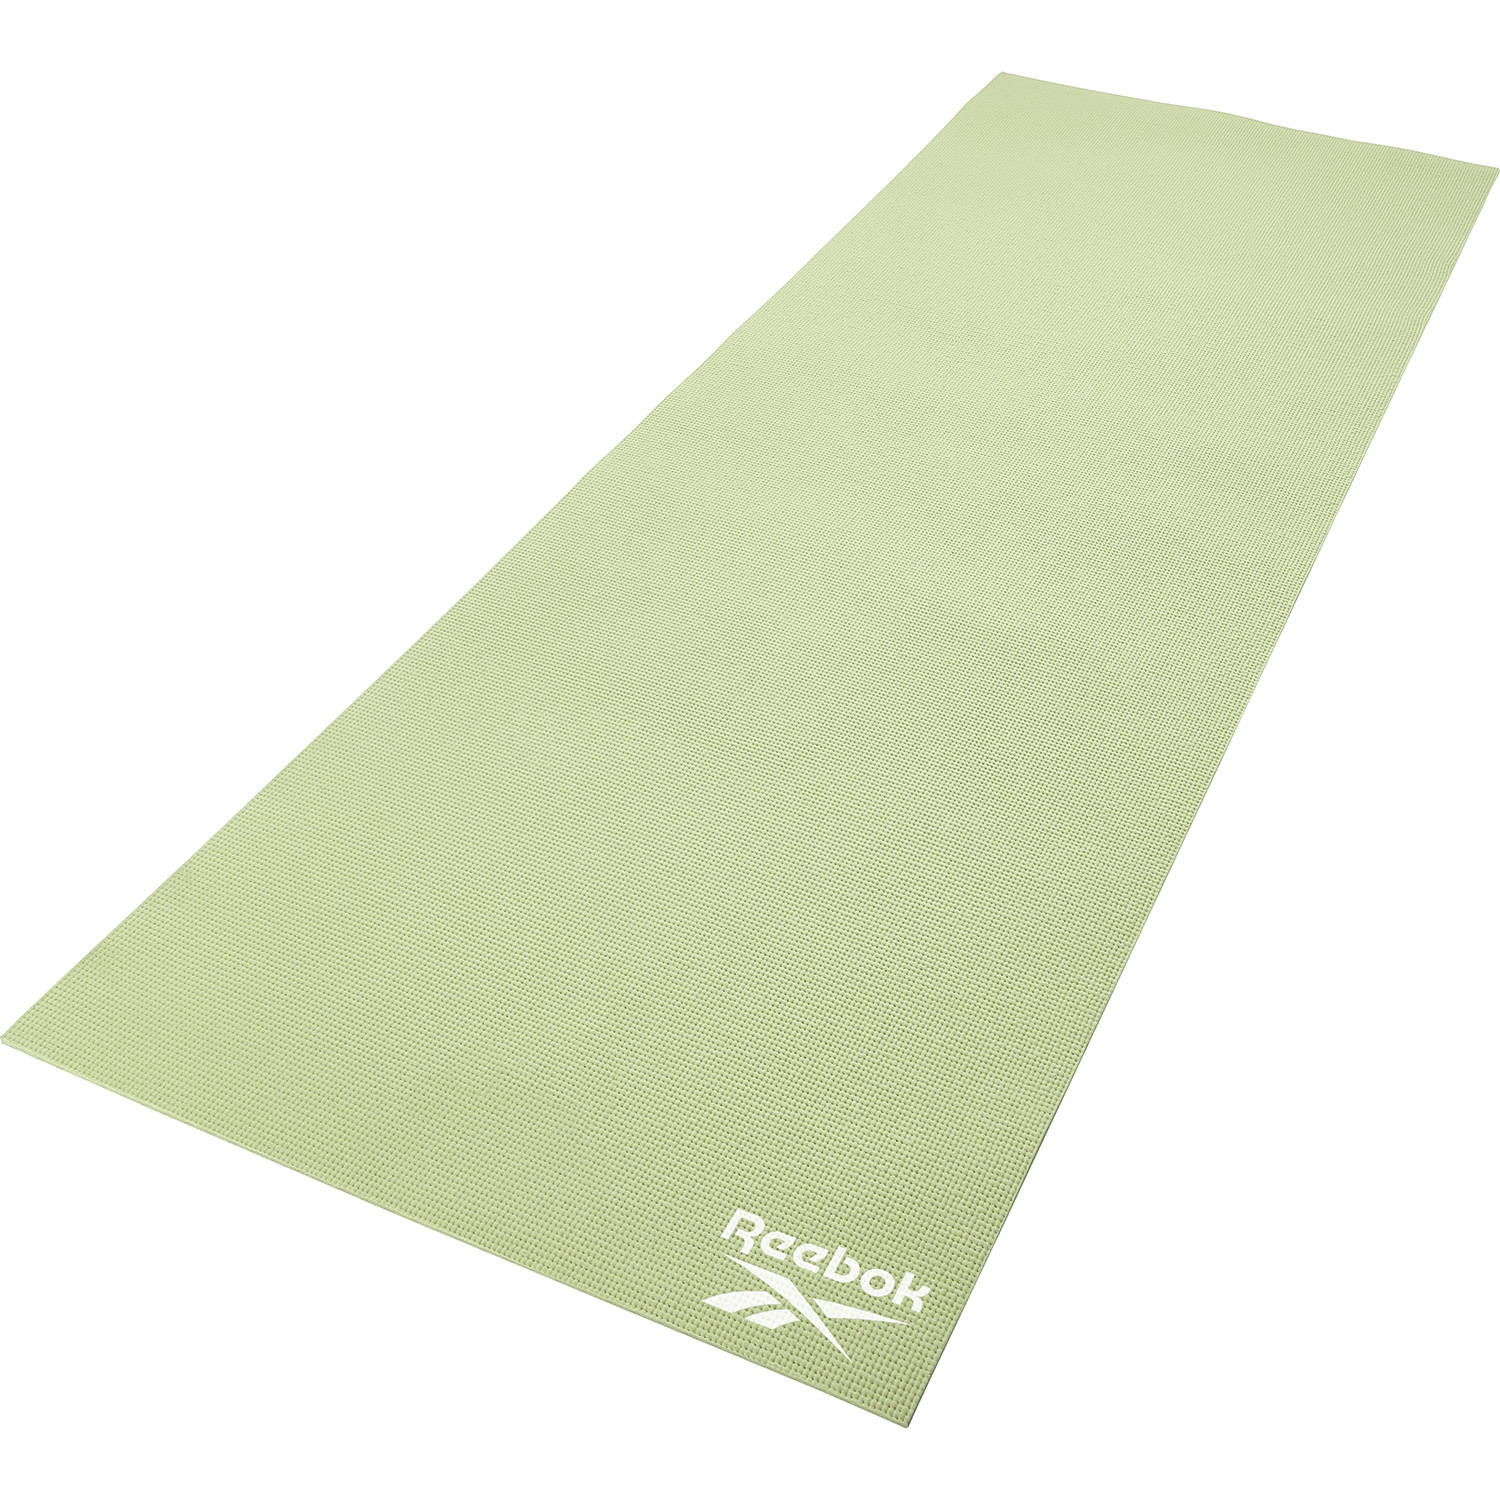 Reebok Yoga Mat 4mm Groen